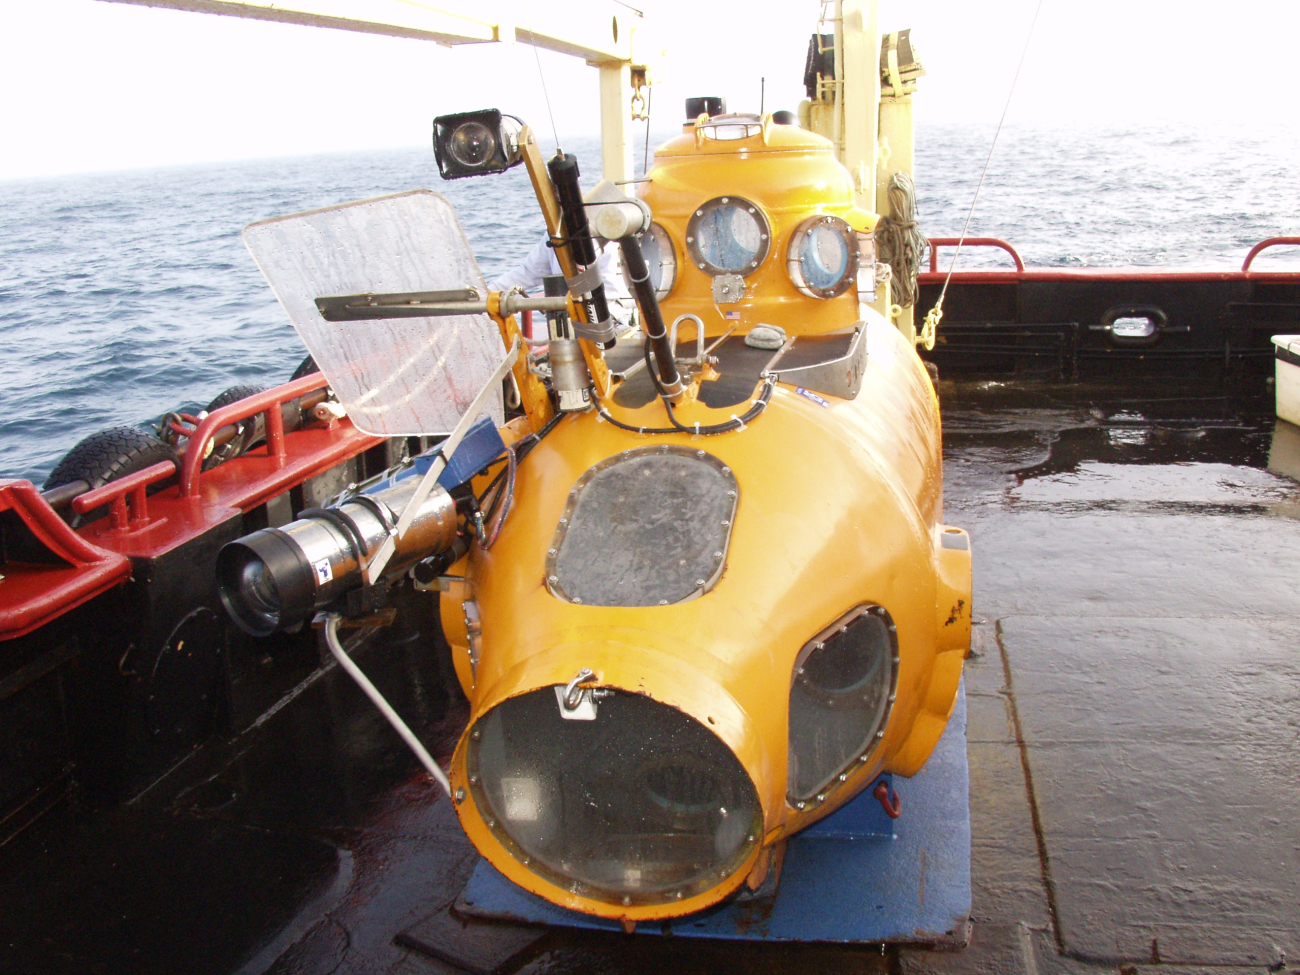 Delta Submersible preparing for an 85-meter depth dive at Latitude 37 59 N